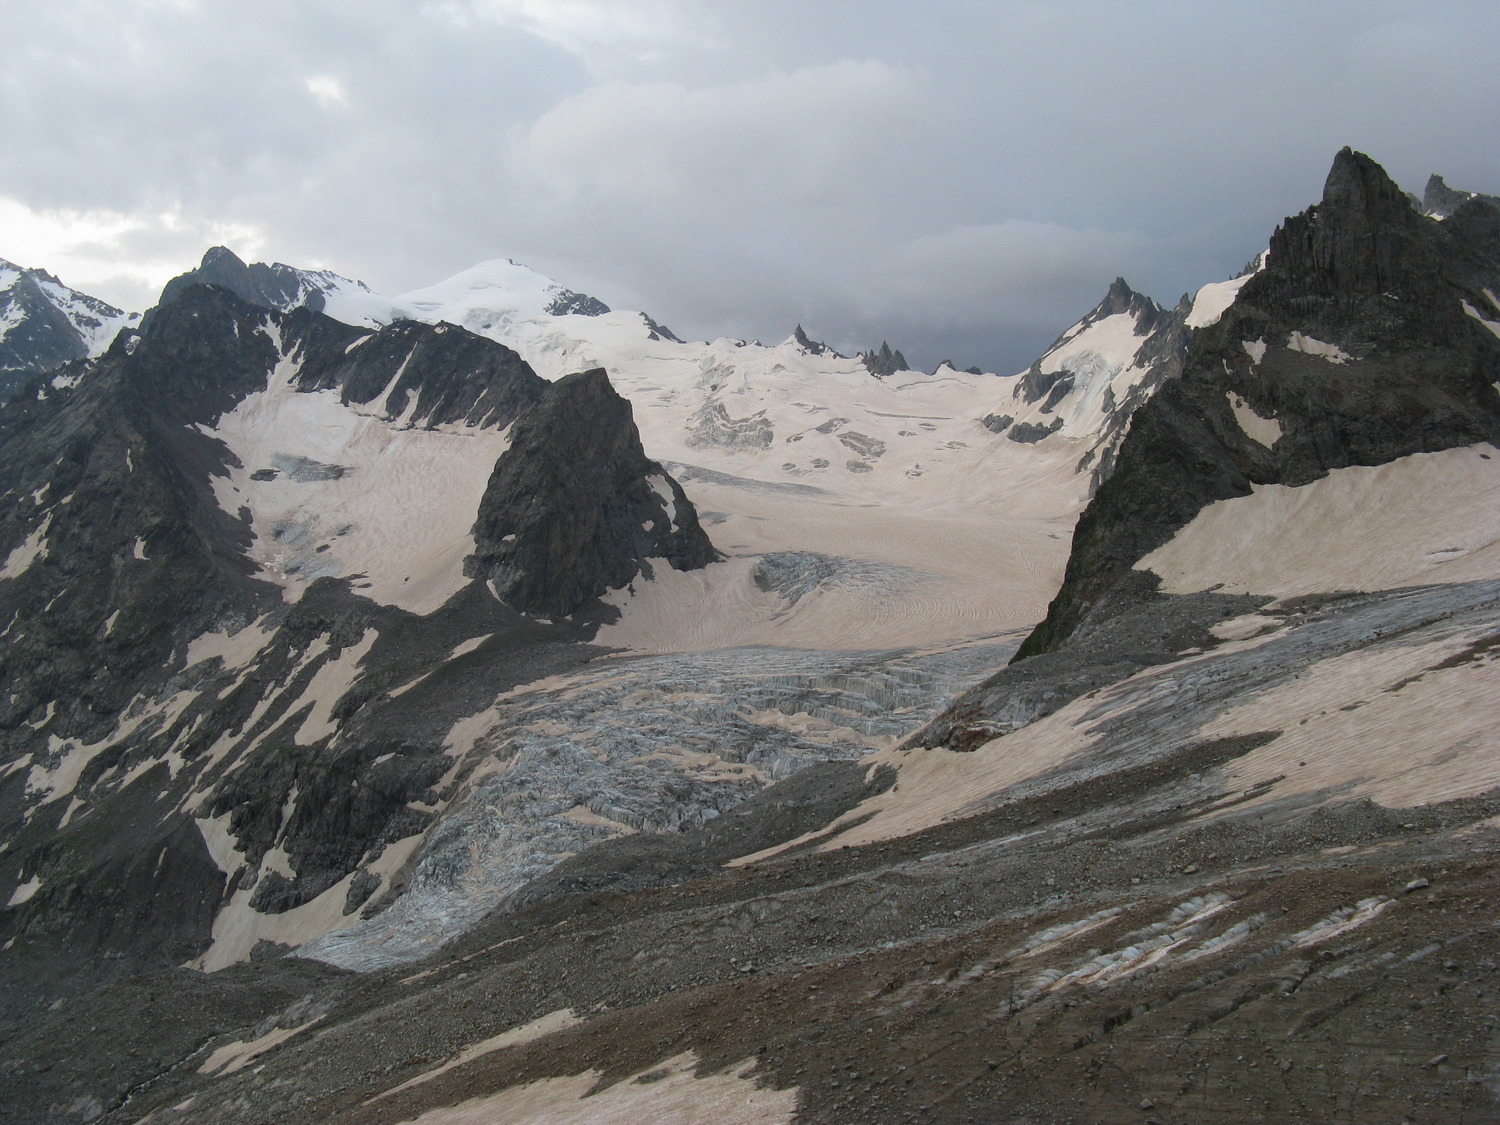 Вид на леднк Башиль. Самая высокая вершина - пик Бодорку. Левее и ближе - пик Баумана, от которого еще левее - седловина перевала Чат.